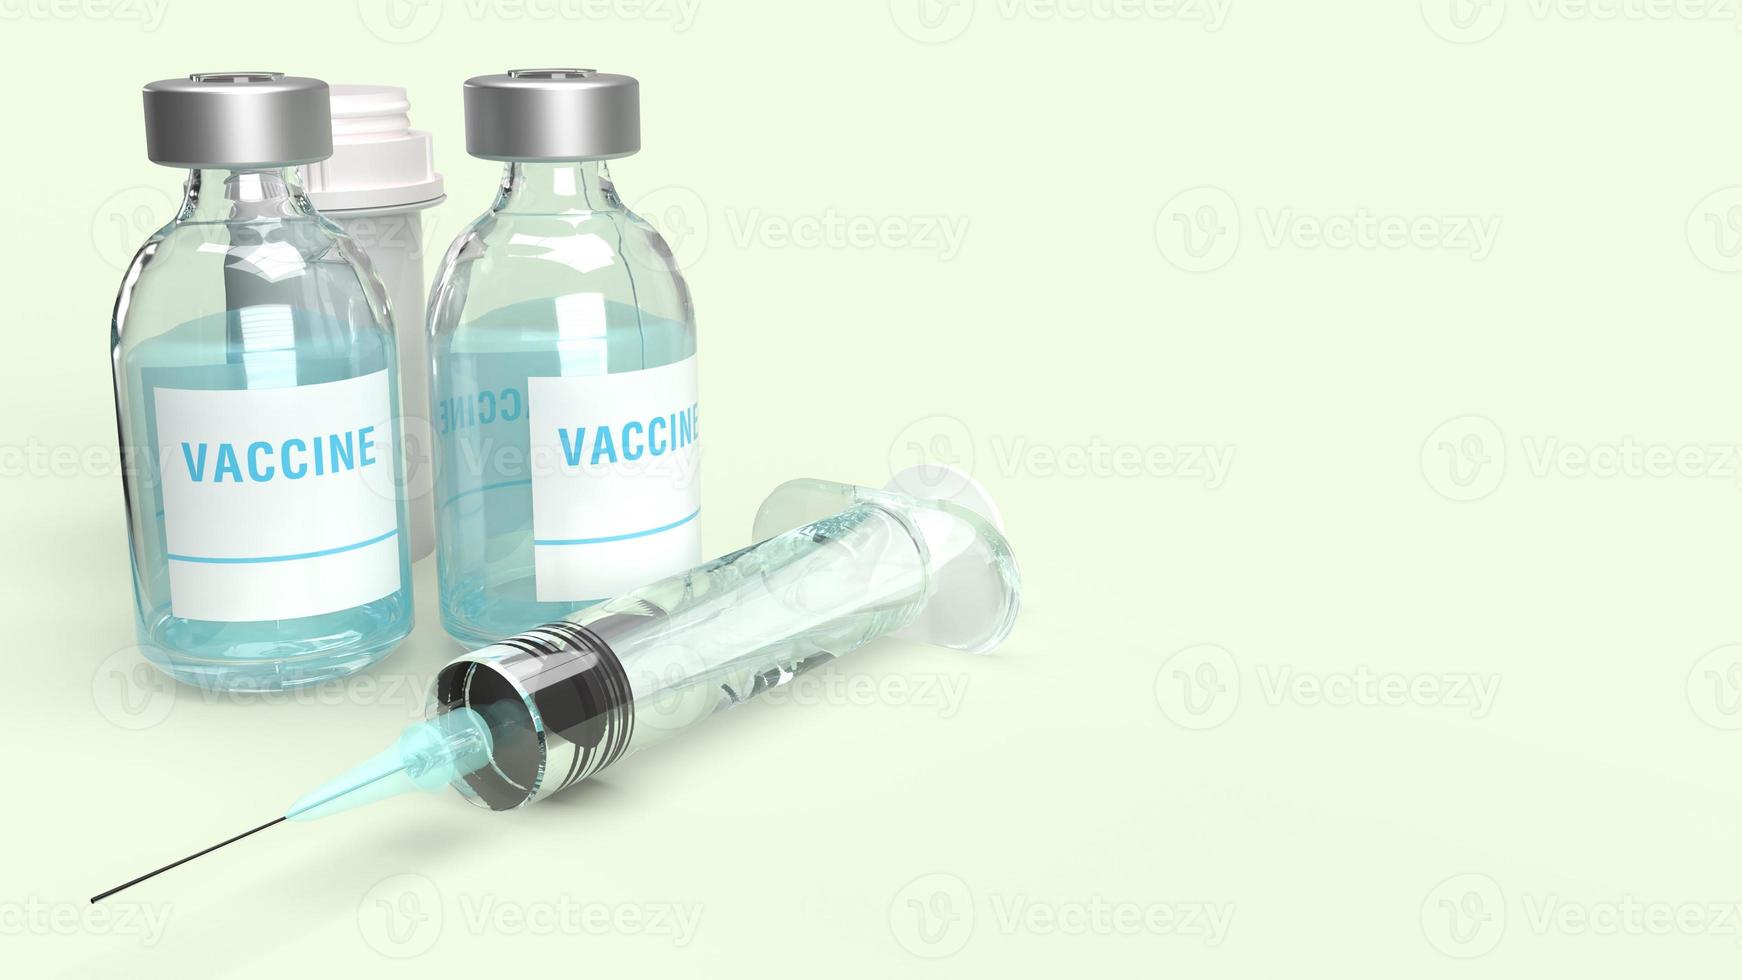 flacons de vaccin seringue rendu 3d sur fond blanc pour le contenu médical. photo